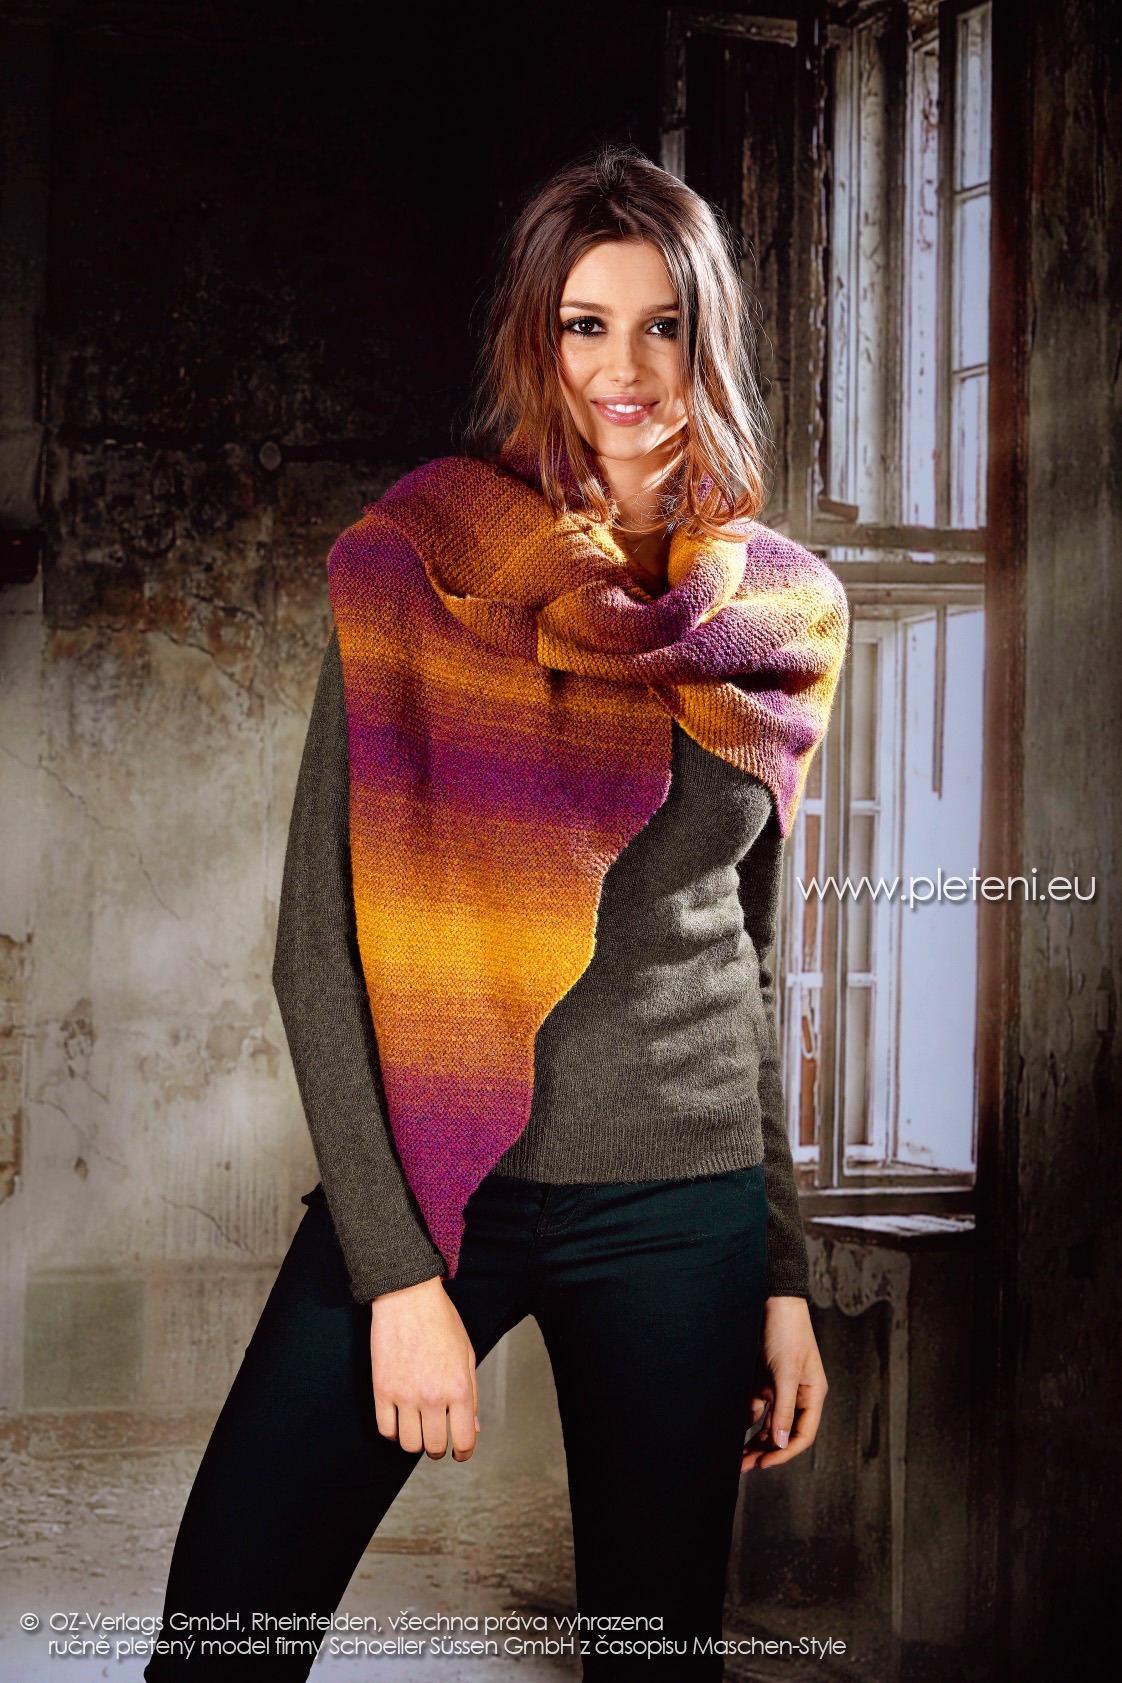 2017-2018 model 34 dámská pletená šála z příze Ambra Color firmy Schoeller